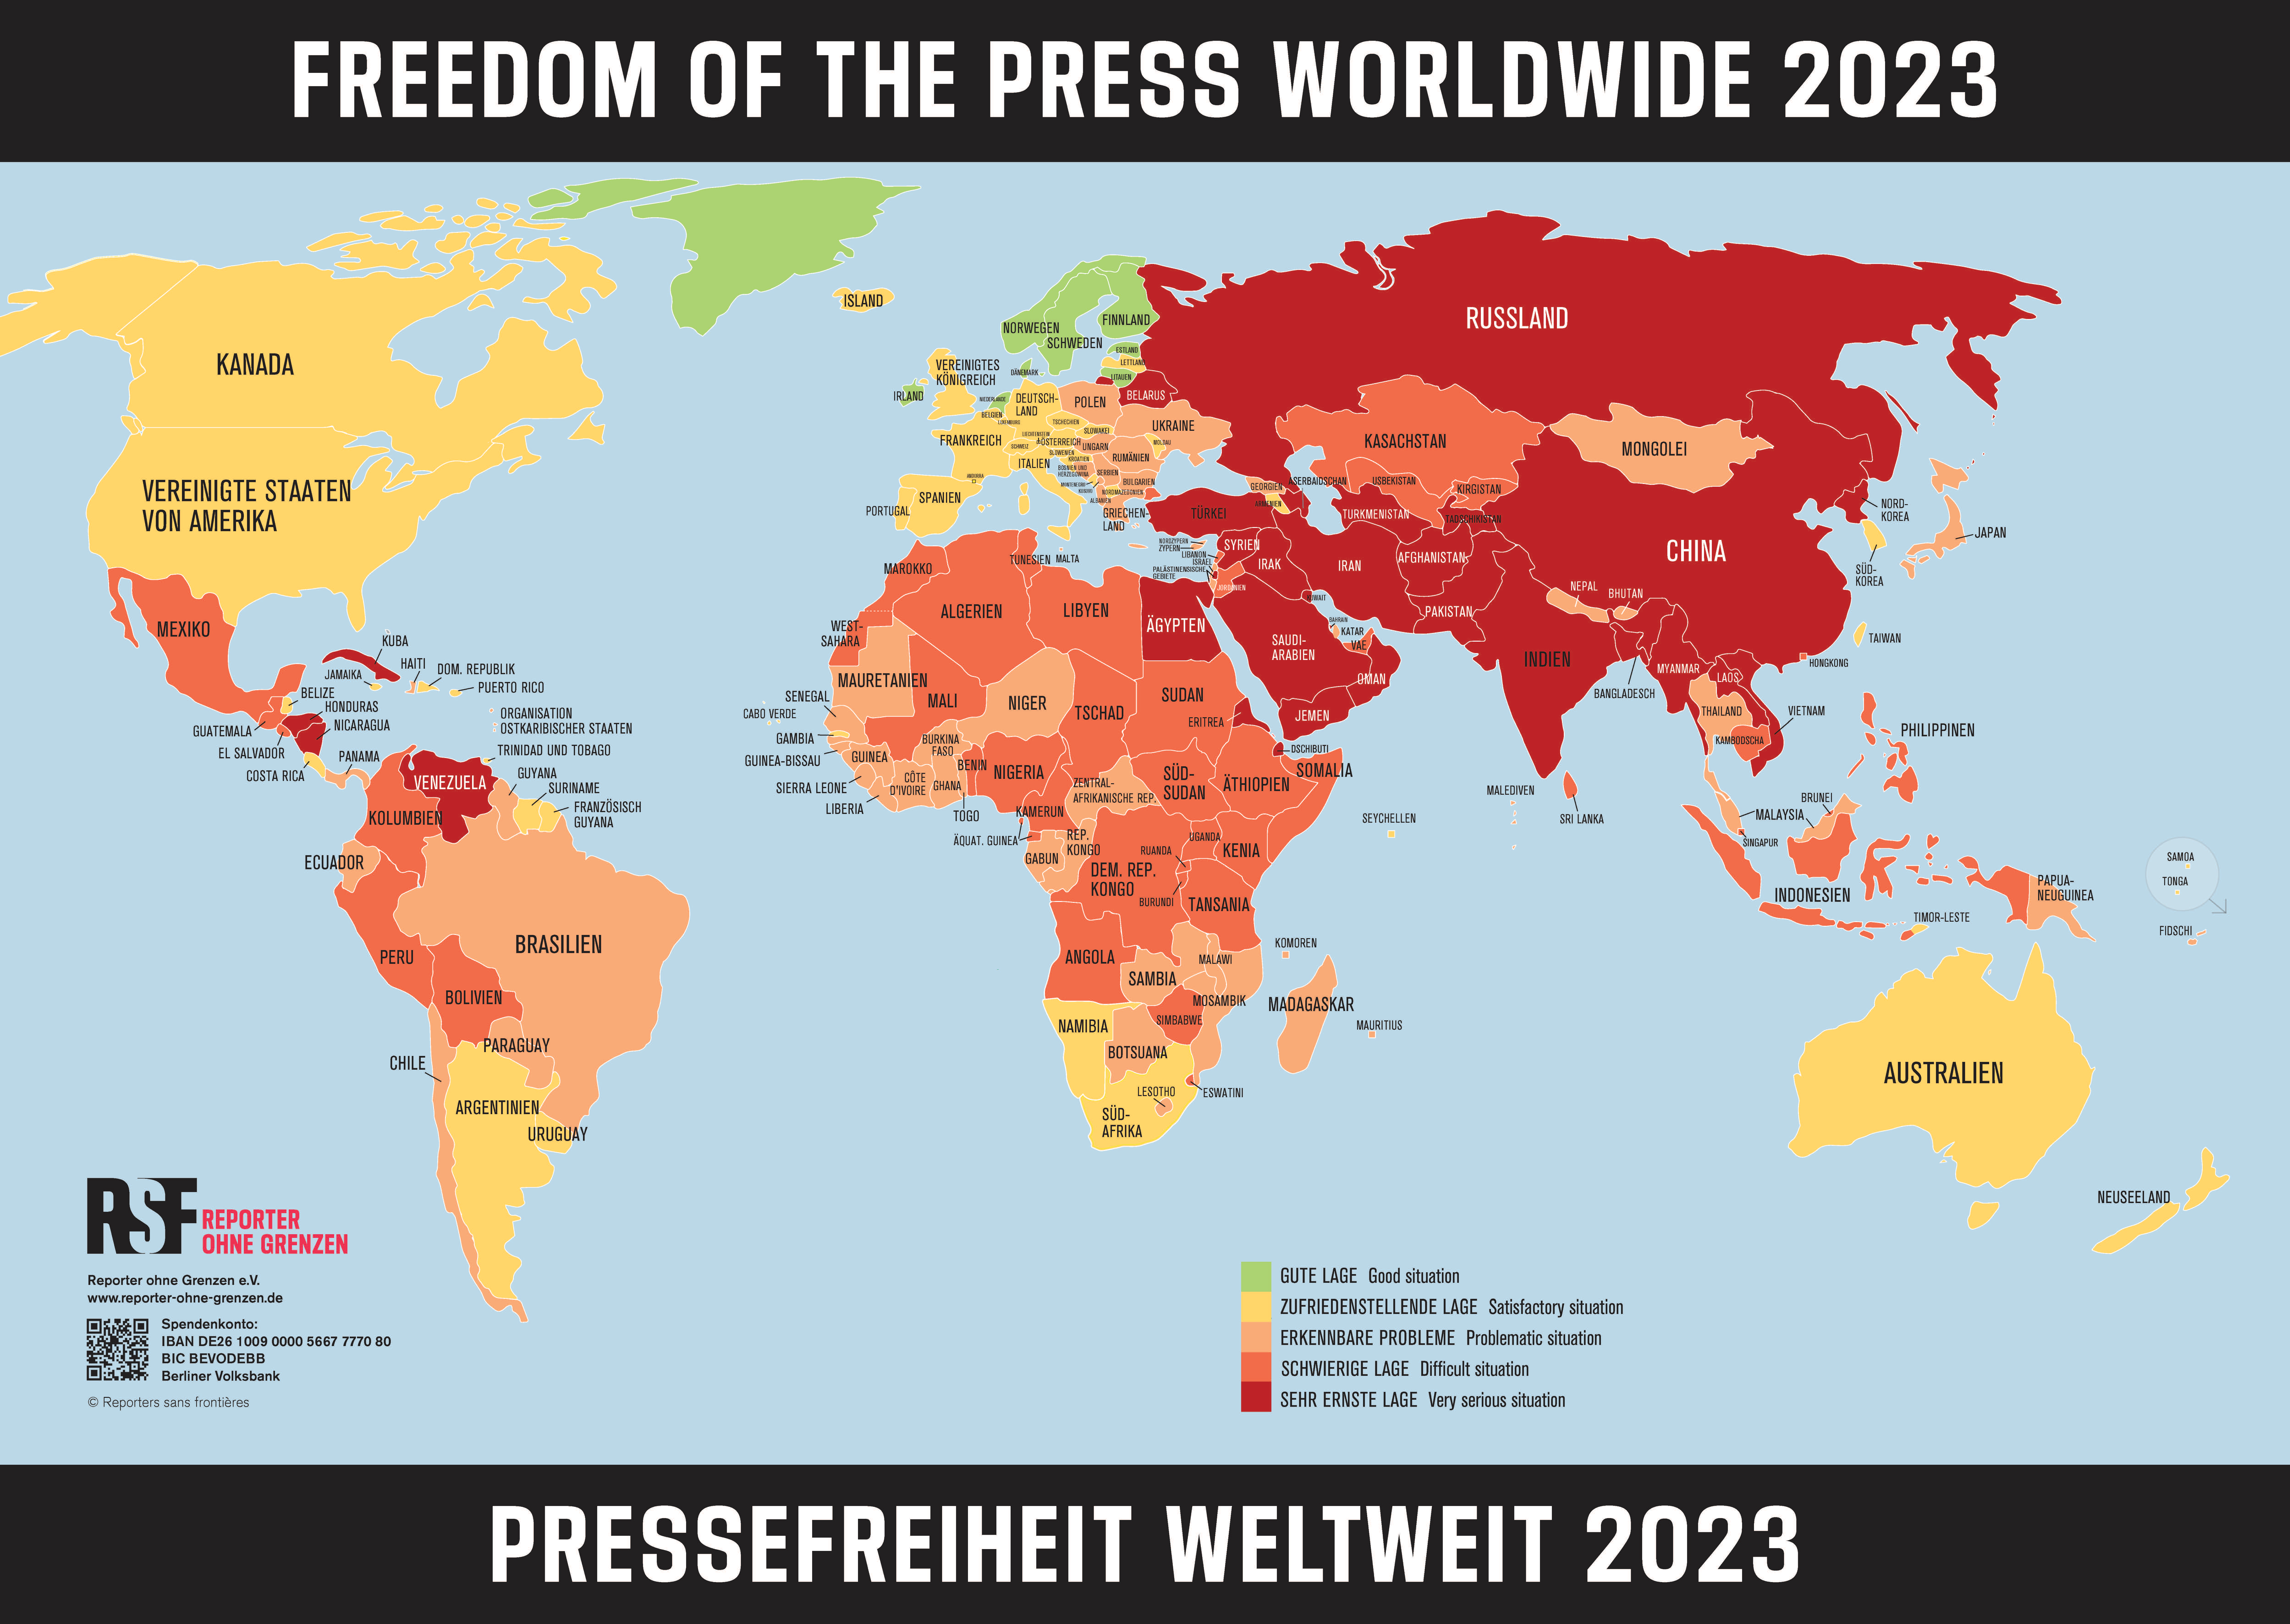 Weltkarte_der_Pressefreiheit_2023